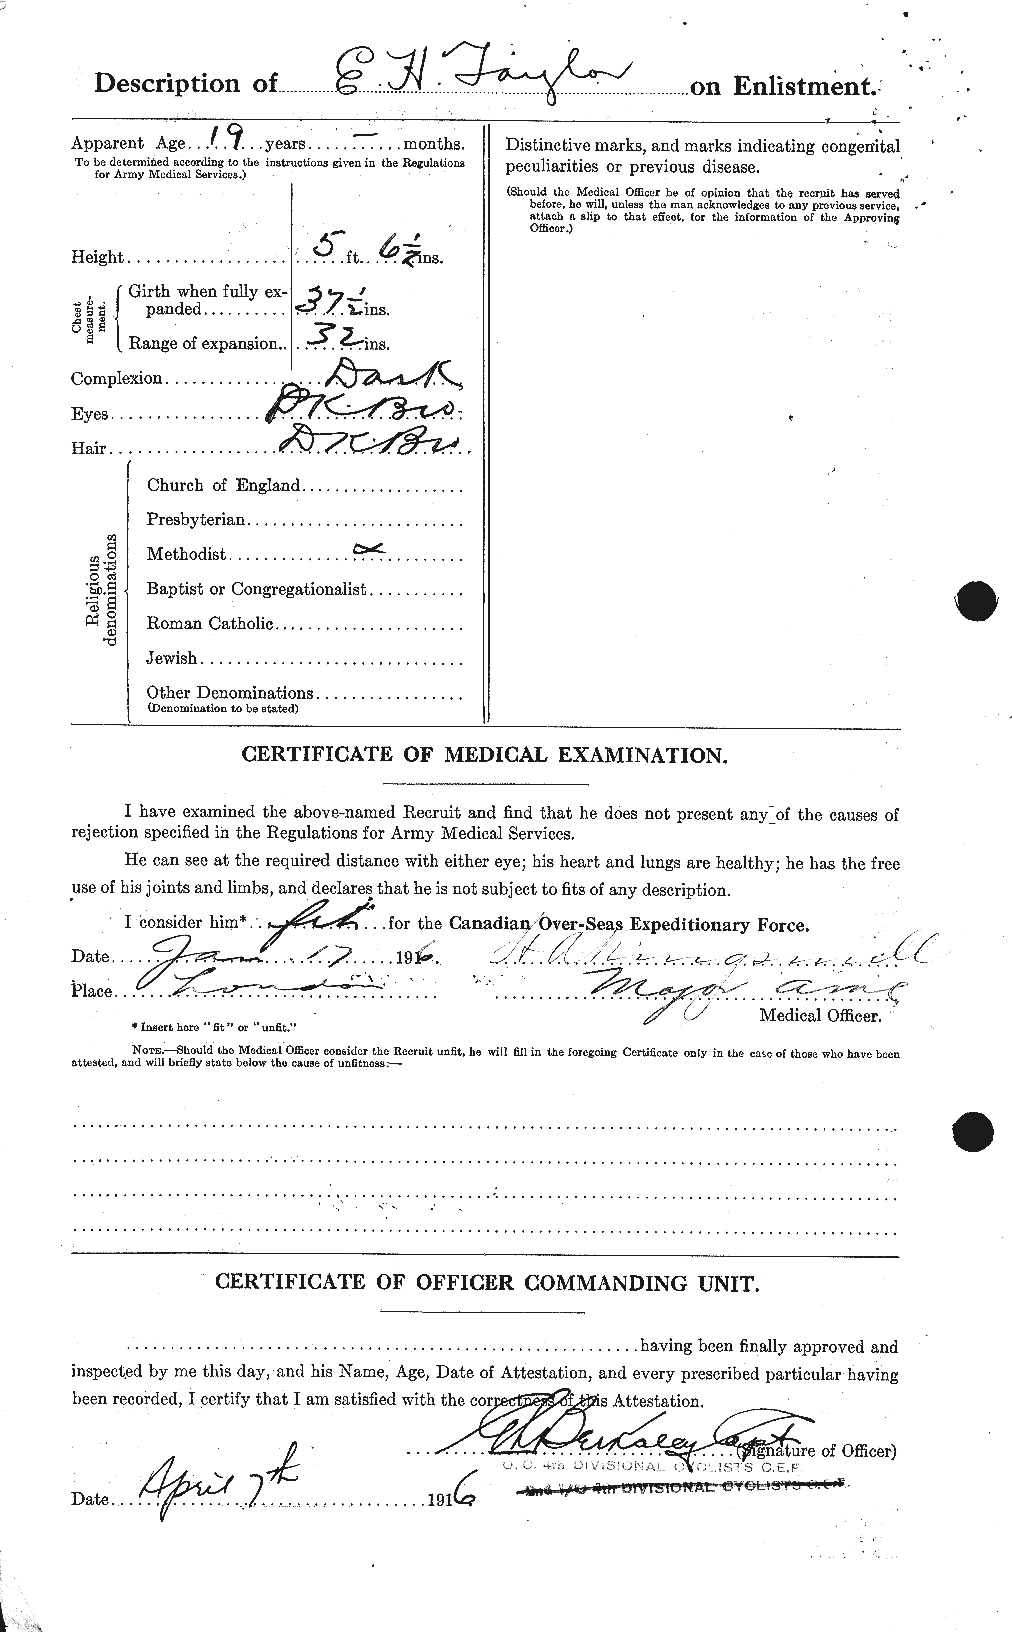 Dossiers du Personnel de la Première Guerre mondiale - CEC 627365b